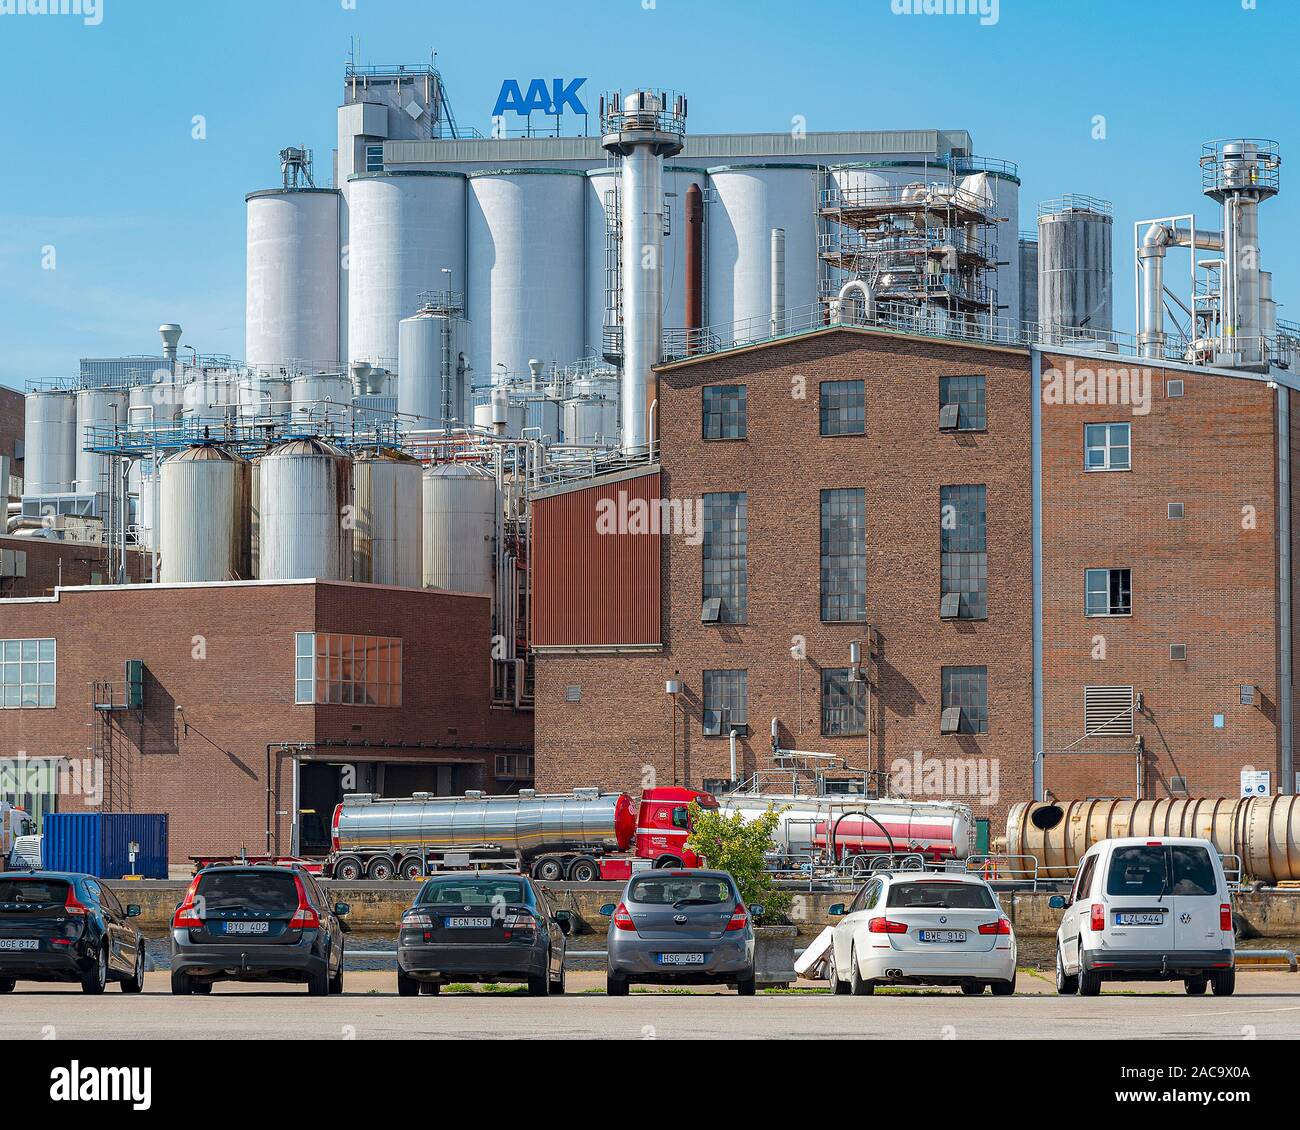 KARLSHAMN, Suecia - Agosto 24, 2019: la AAK, antiguamente AarhusKarlshamn,  es una compañía sueco-danesa y productor de valor agregado con aceites  vegetales y grasas Fotografía de stock - Alamy